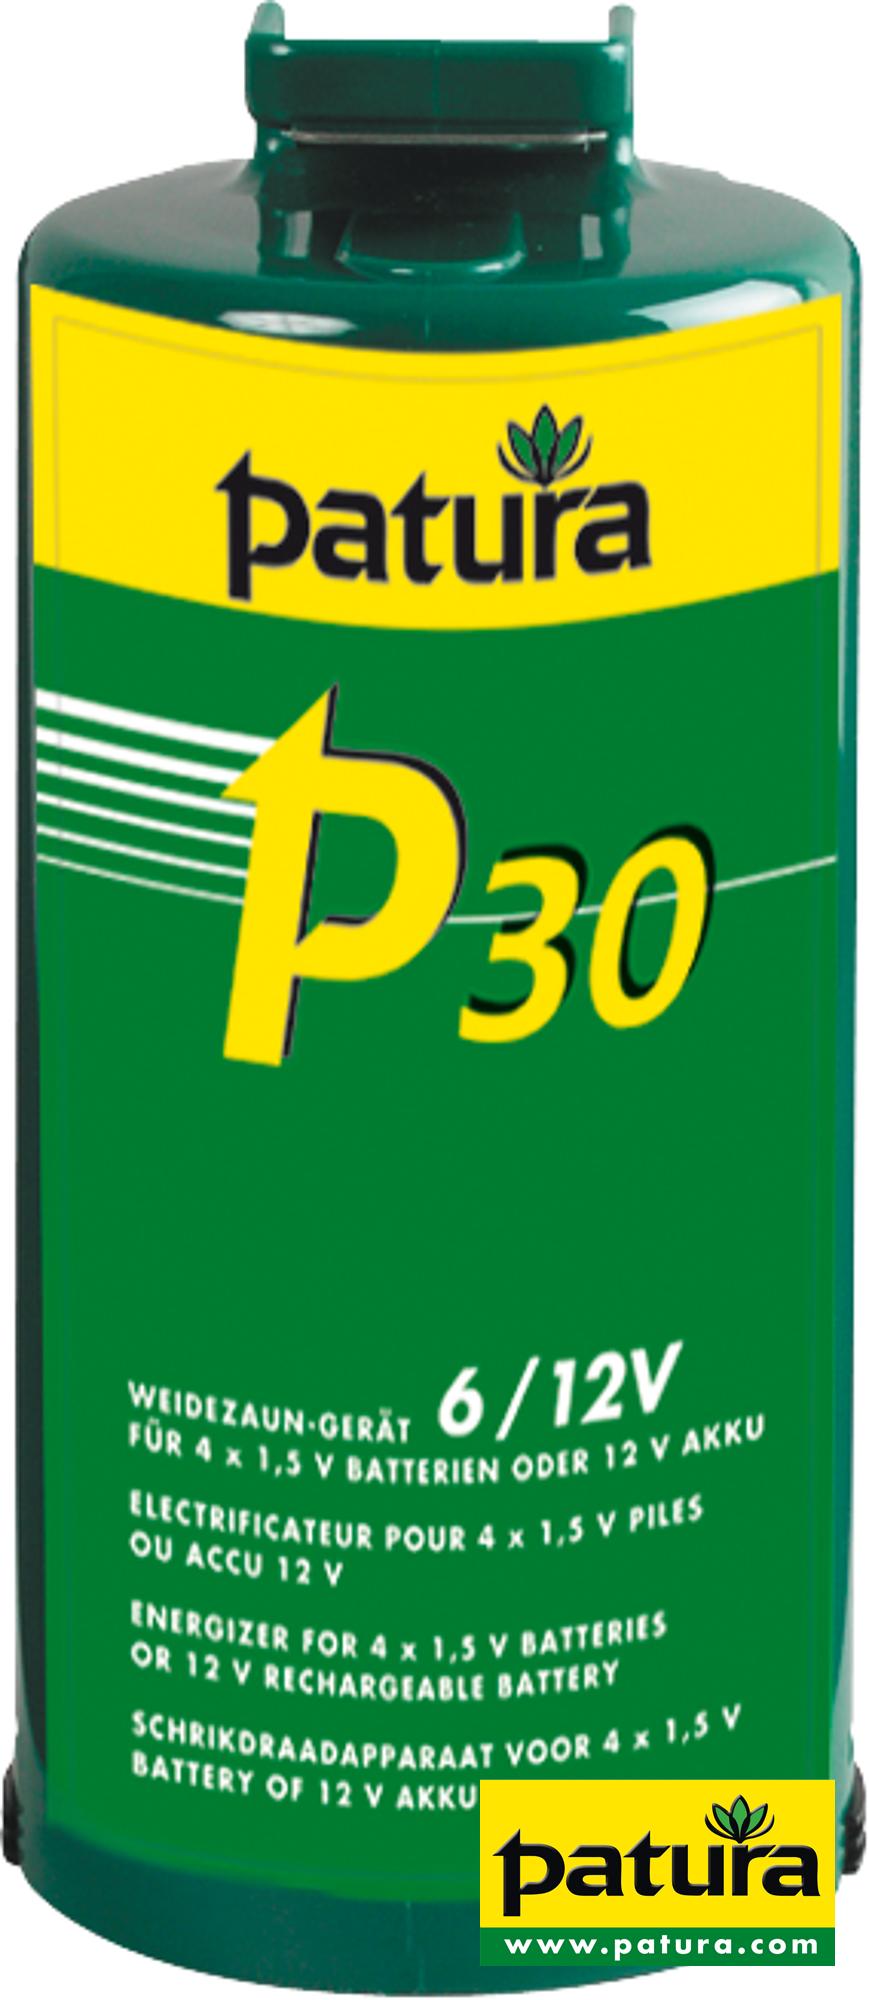 P30, Weidezaun-Gerät für 4 Monozellen oder ext. 12 V Akku